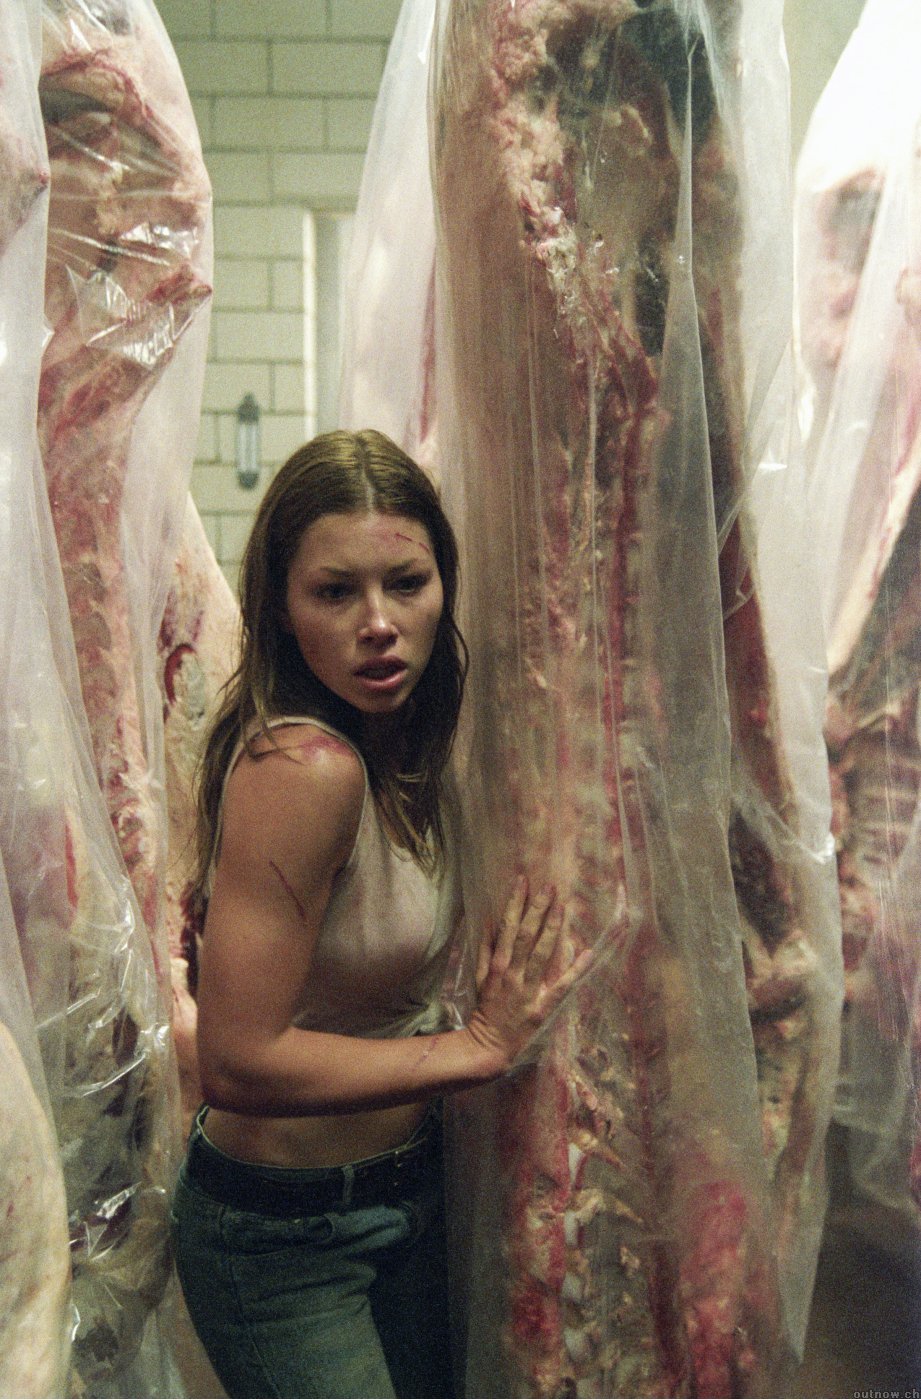 Jessica Biel in The Texas Chainsaw Massacre